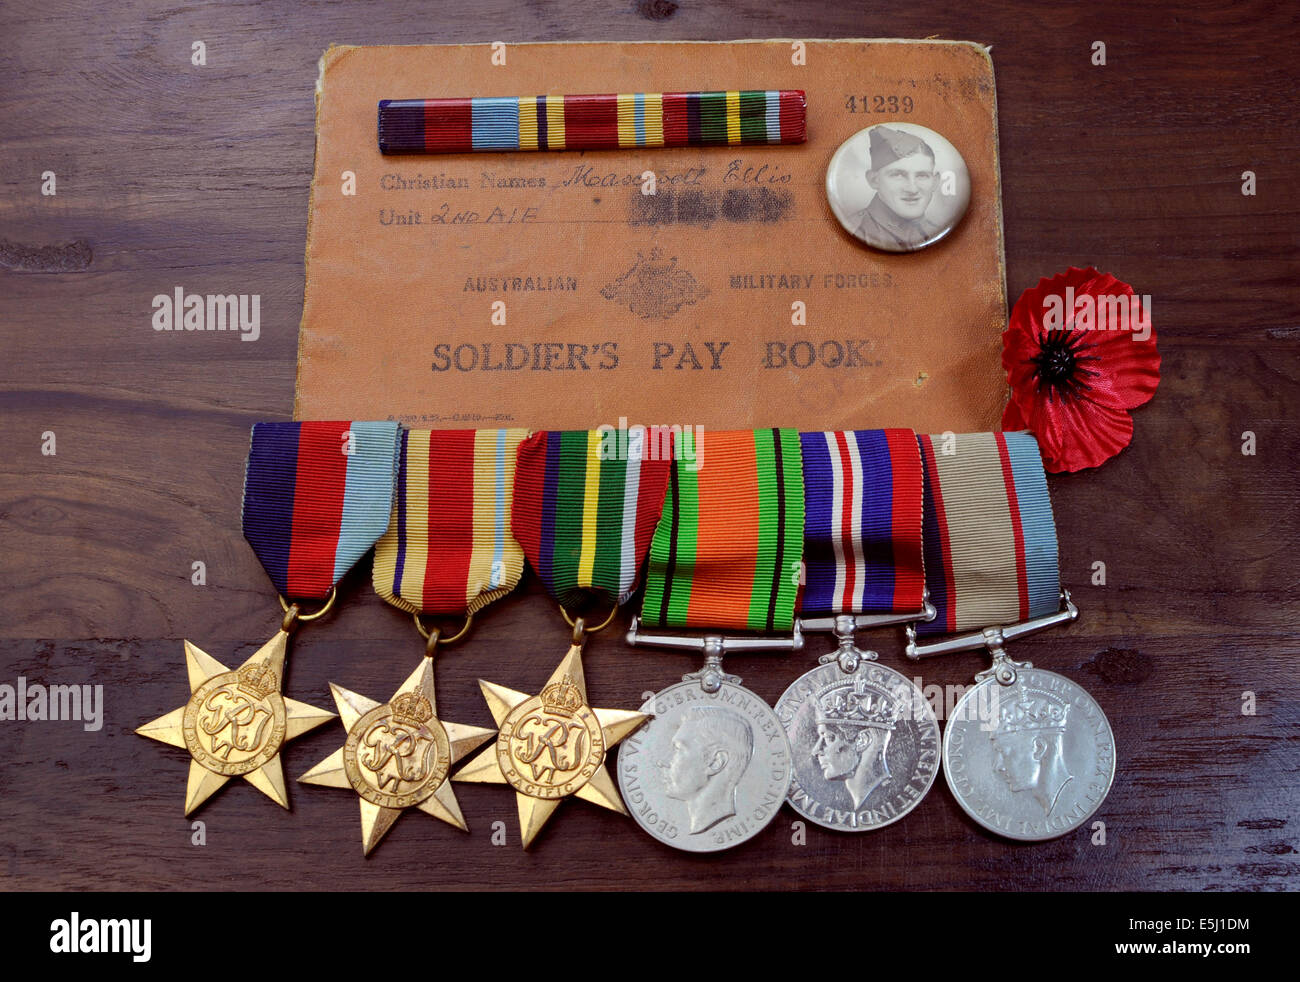 Originale Esercito Australiano campagne della Seconda Guerra Mondiale medaglie con un soldato libro paga e ID foto Foto Stock